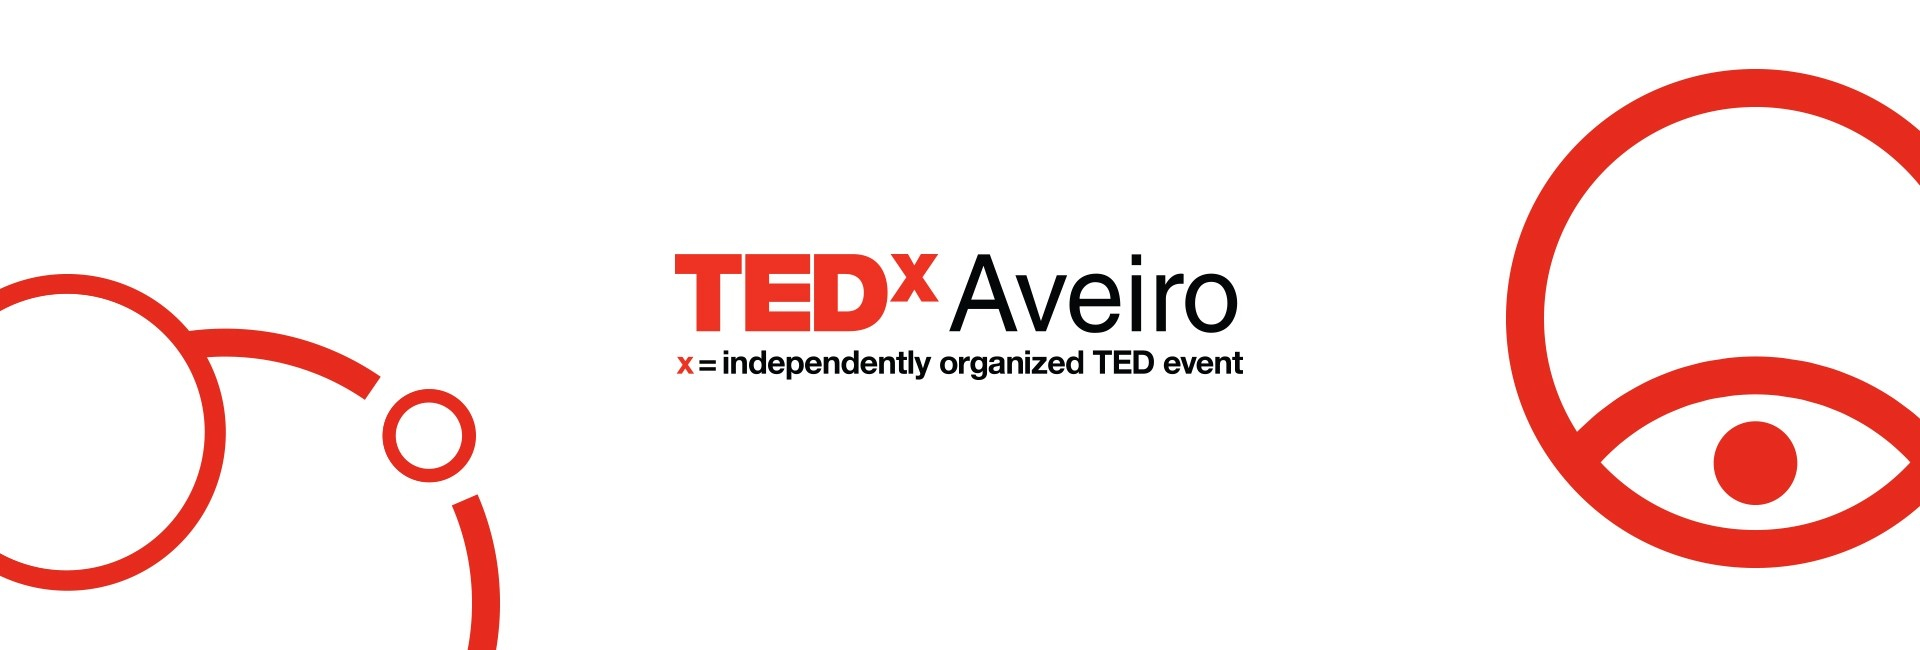 TedxAveiro 2018 - Detalhe 5 - LOBA.cx